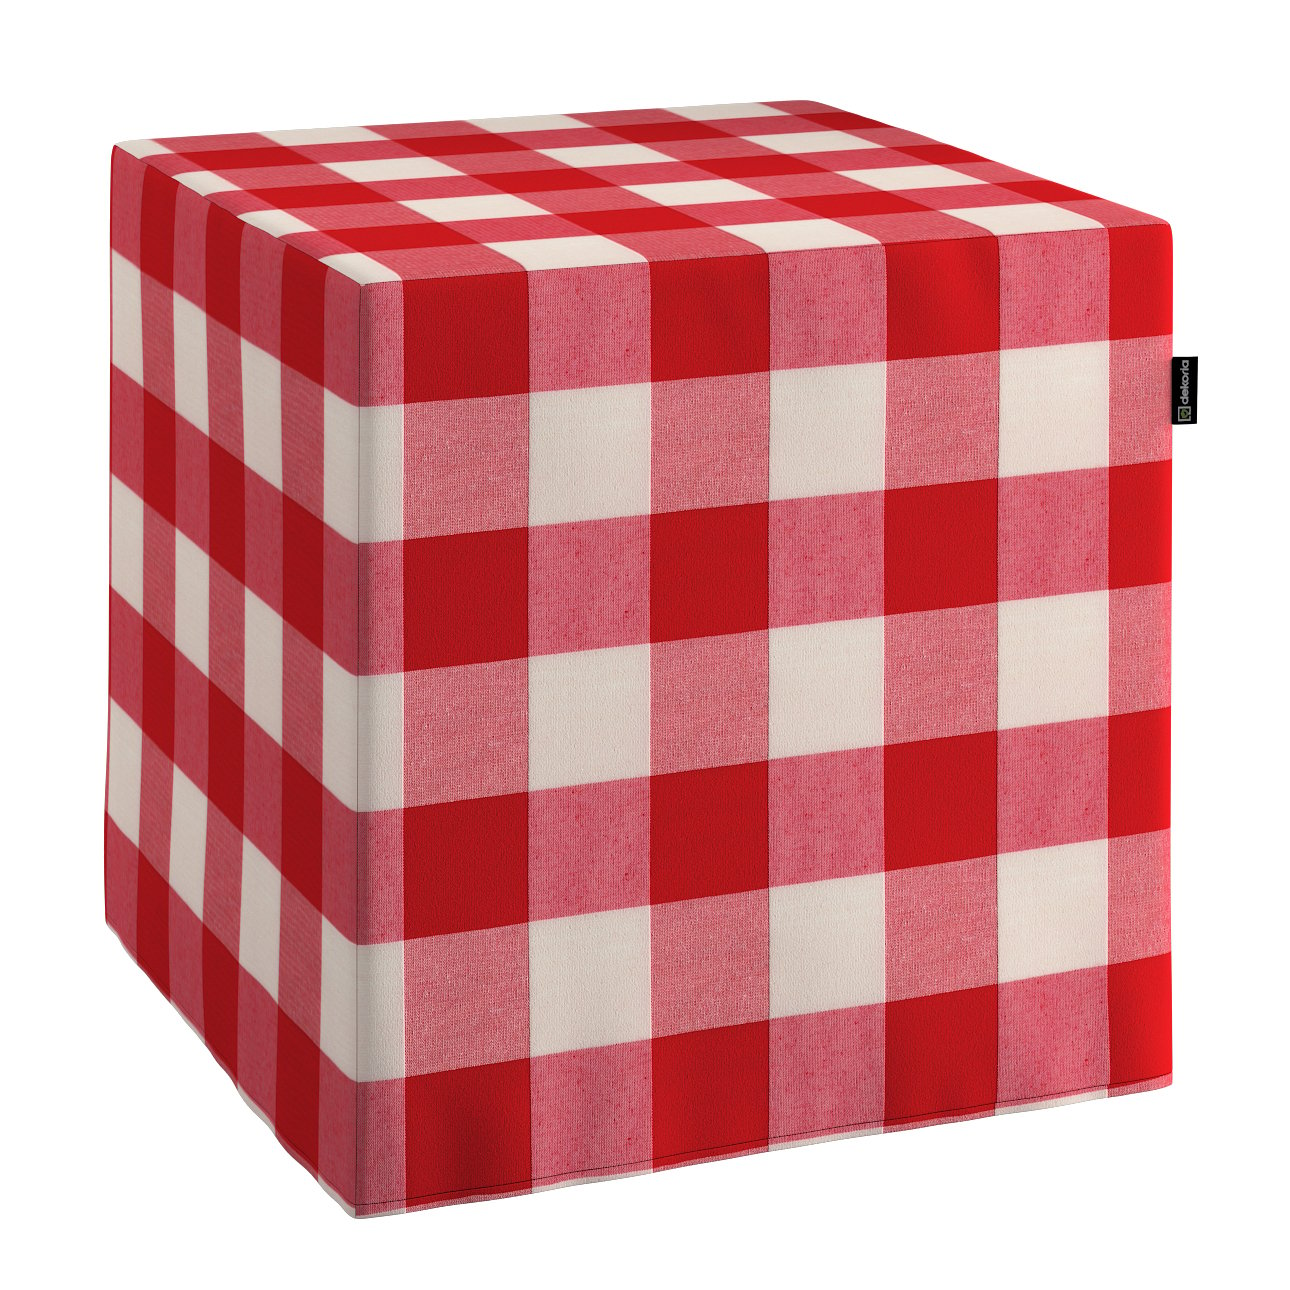 Dekoria Taburetka tvrdá, kocka, červeno-biele veľké káro, 40 x 40 x 40 cm, Quadro, 136-18